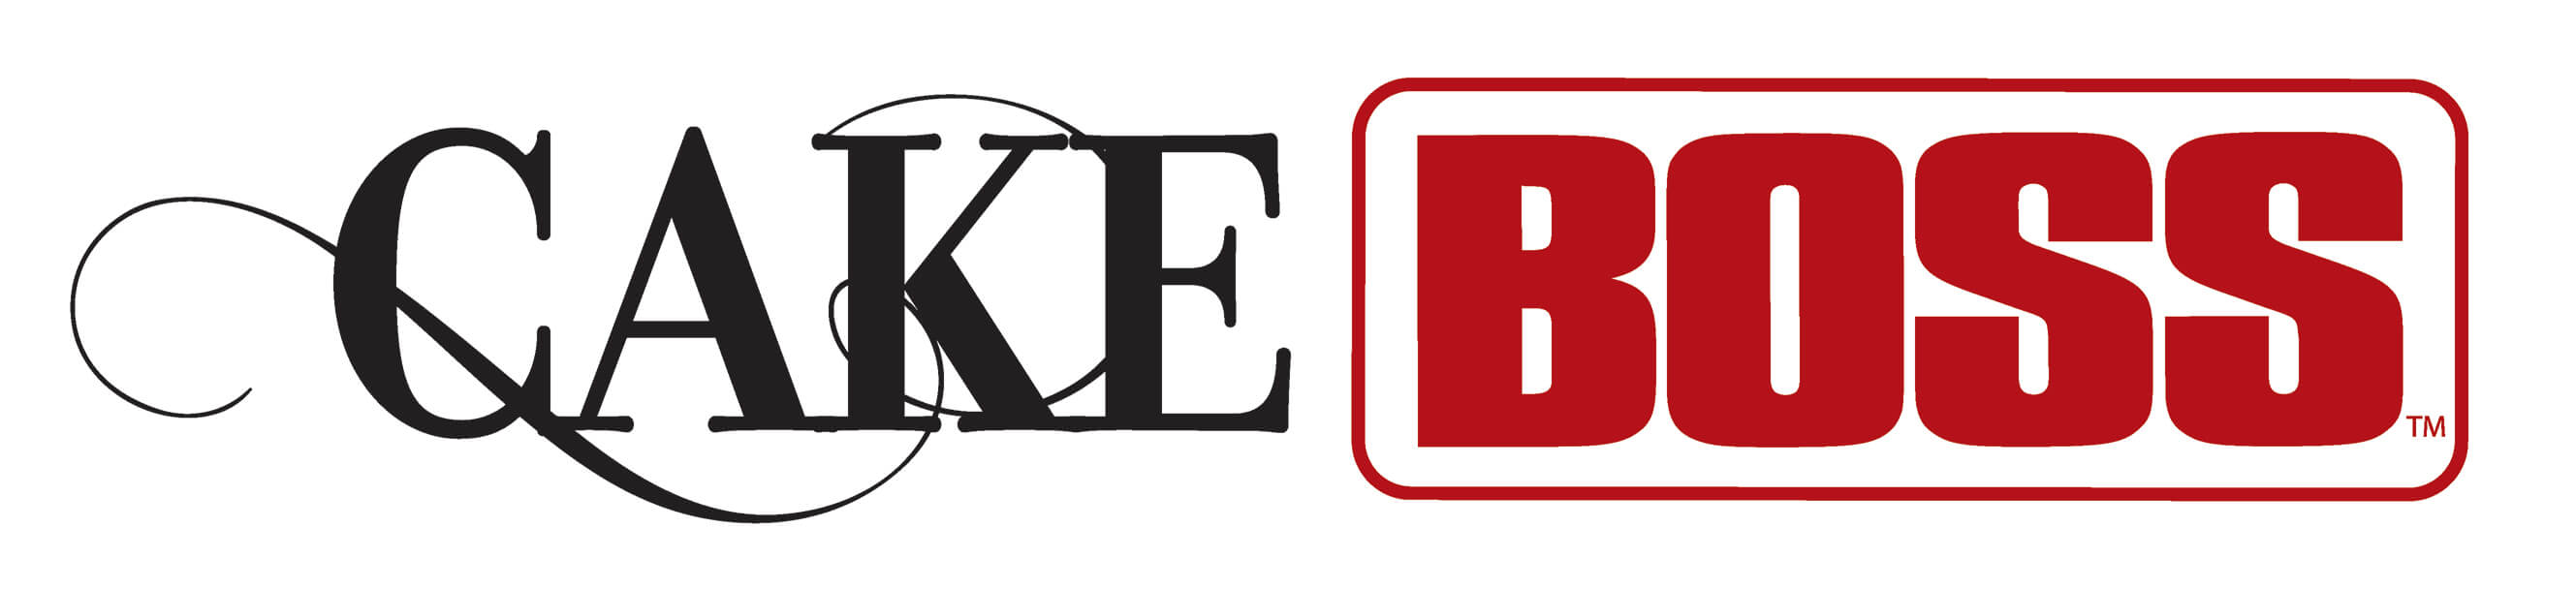 CakeBoss-Logo_1Line-CMYK